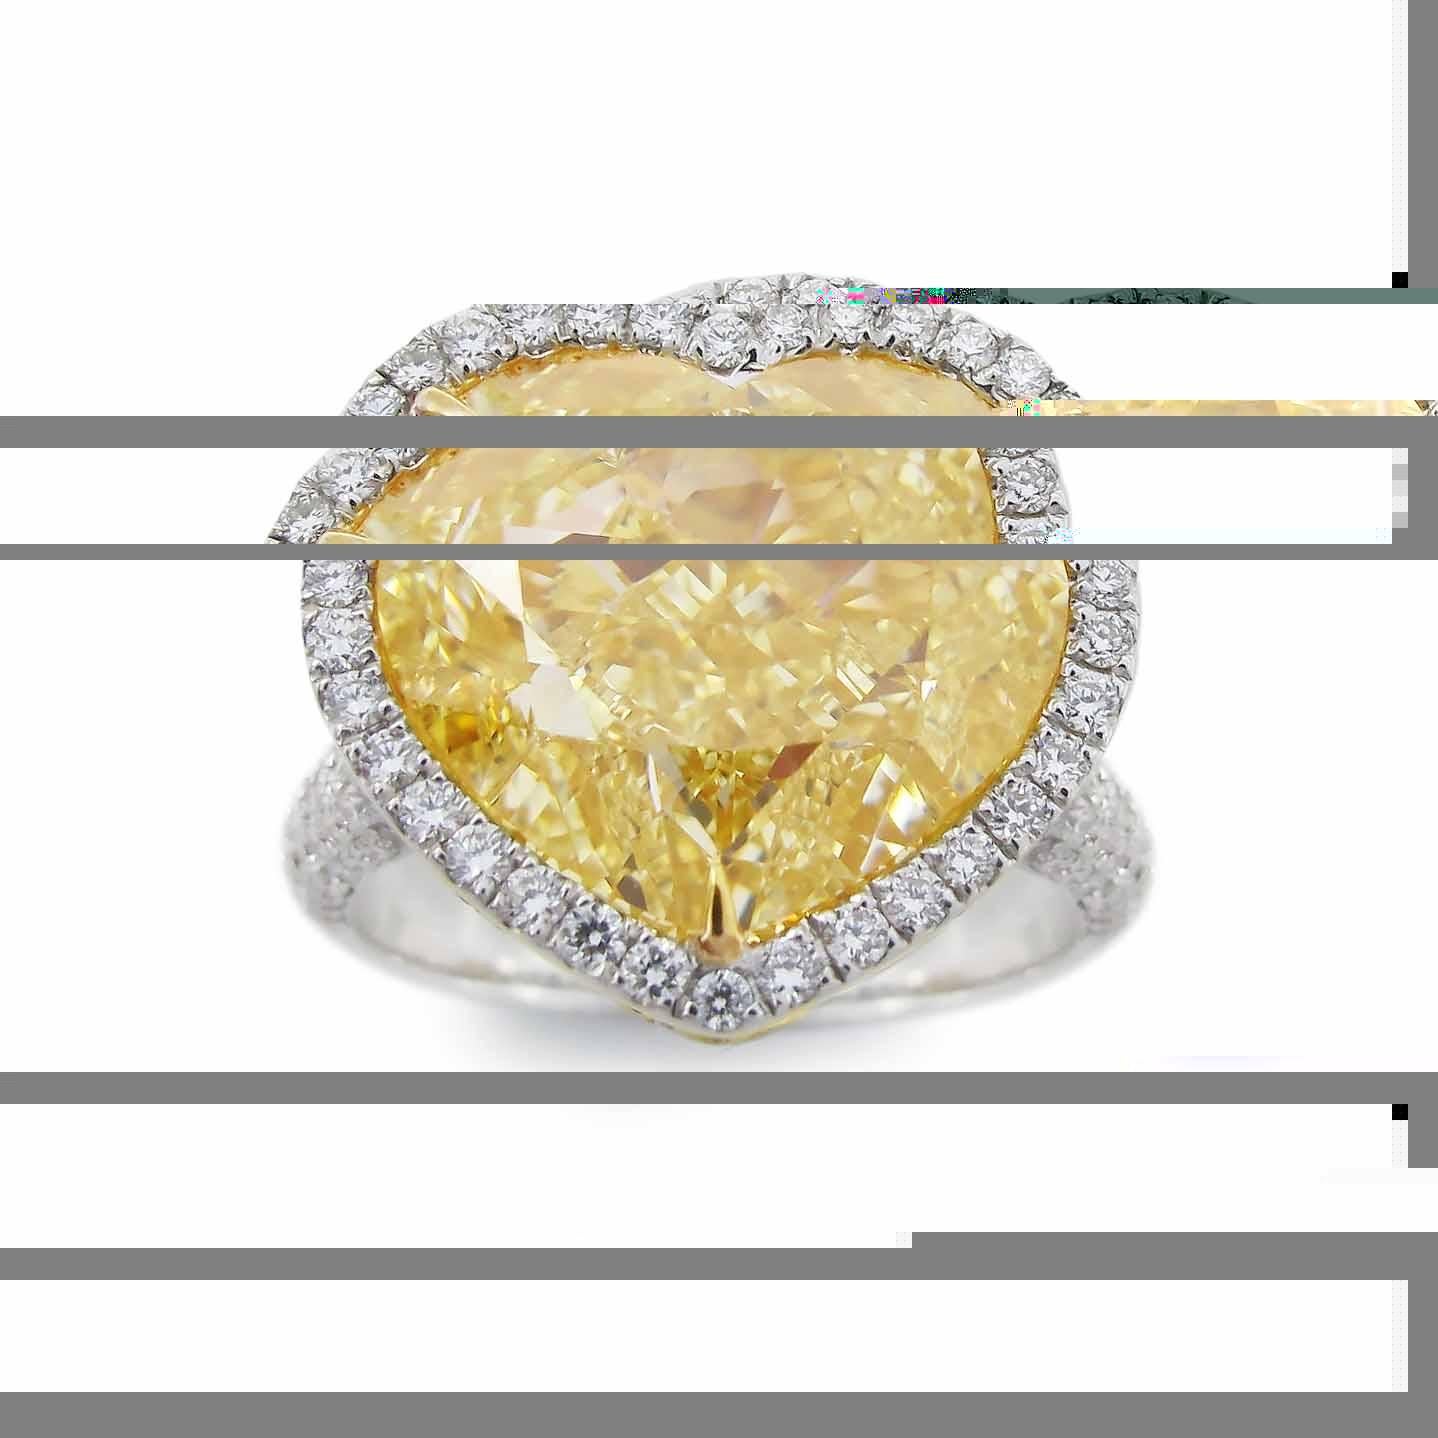 From The Museum Vault at Emilio Jewelry Situé sur l'emblématique Cinquième Avenue de New York,
Elle est ornée d'un diamant de forme cœur très spécial et rare, certifié GIA, de couleur naturelle jaune fantaisie, serti au centre. Fabriqué à la main